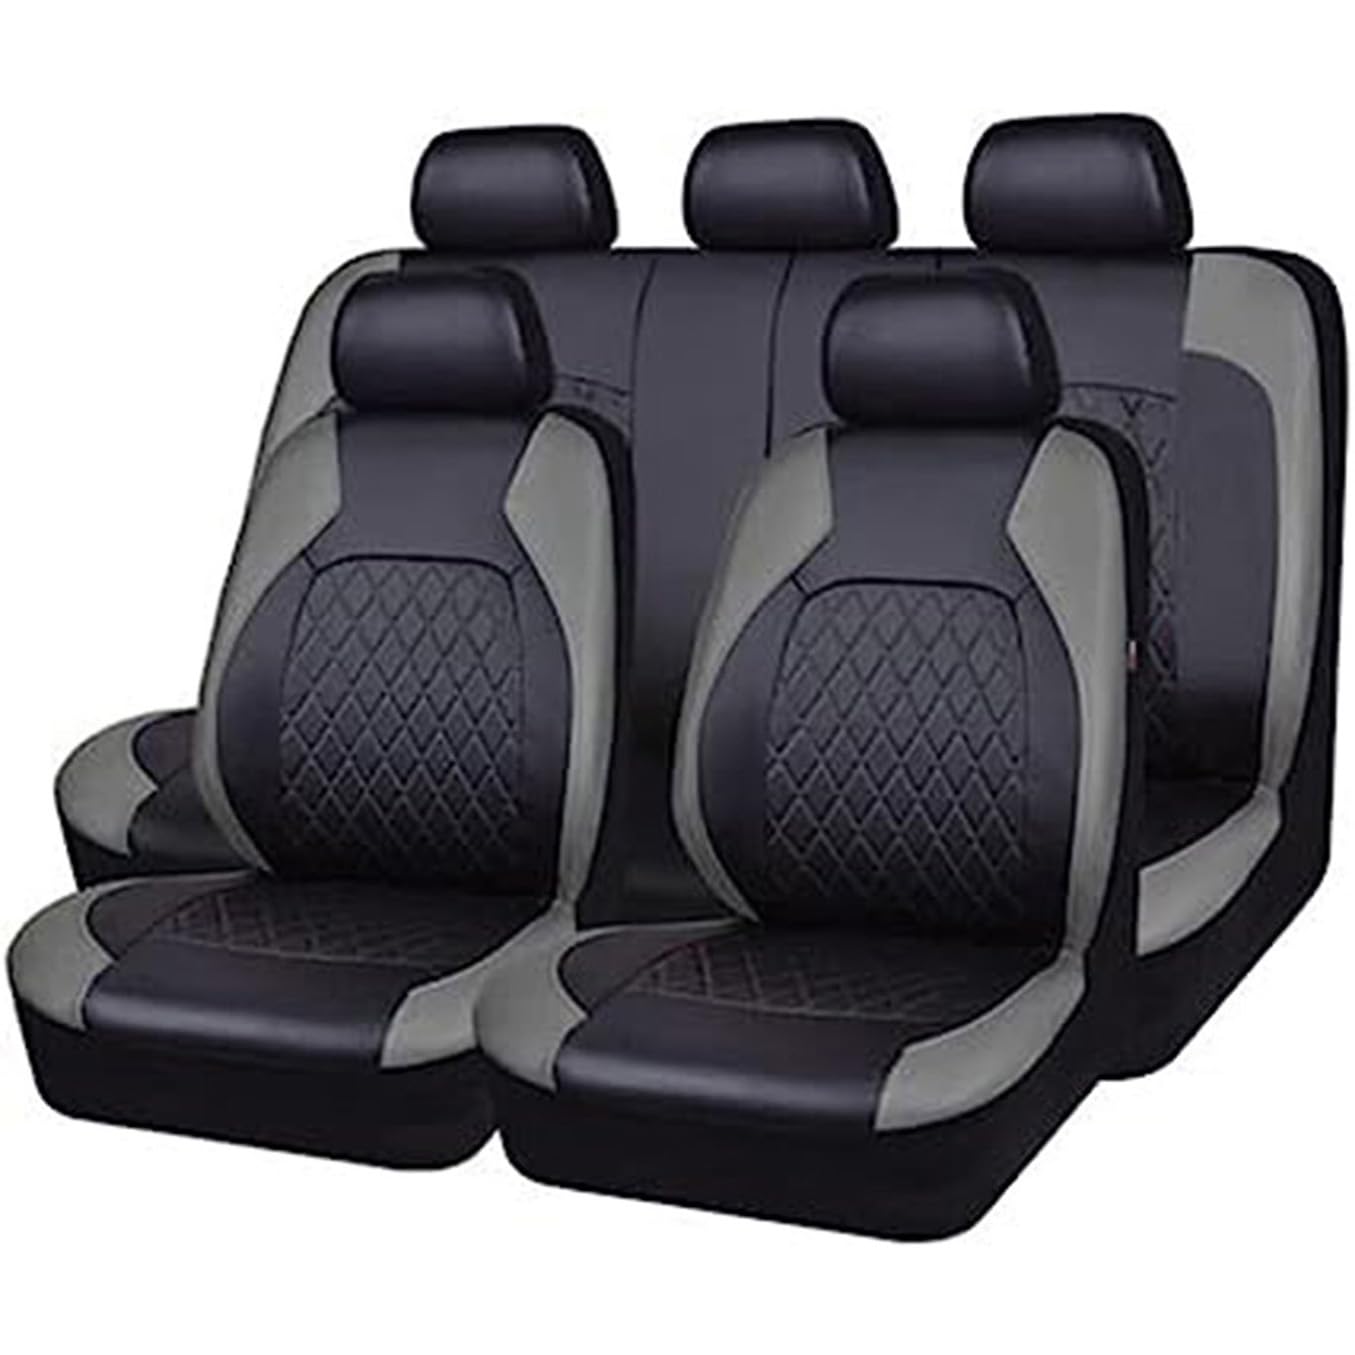 ENDYAK Auto-Sitzbezug für Mazda 6 Mazda6 Type GJ GG GG1 GJ GH GG GG1 GY GY1 2002-2019 2020 2021 2022 2023, 9-teiliges Set Sitzbezug Komplett-Set, wasserdichte Autositzschoner aus Leder,Grey von ENDYAK